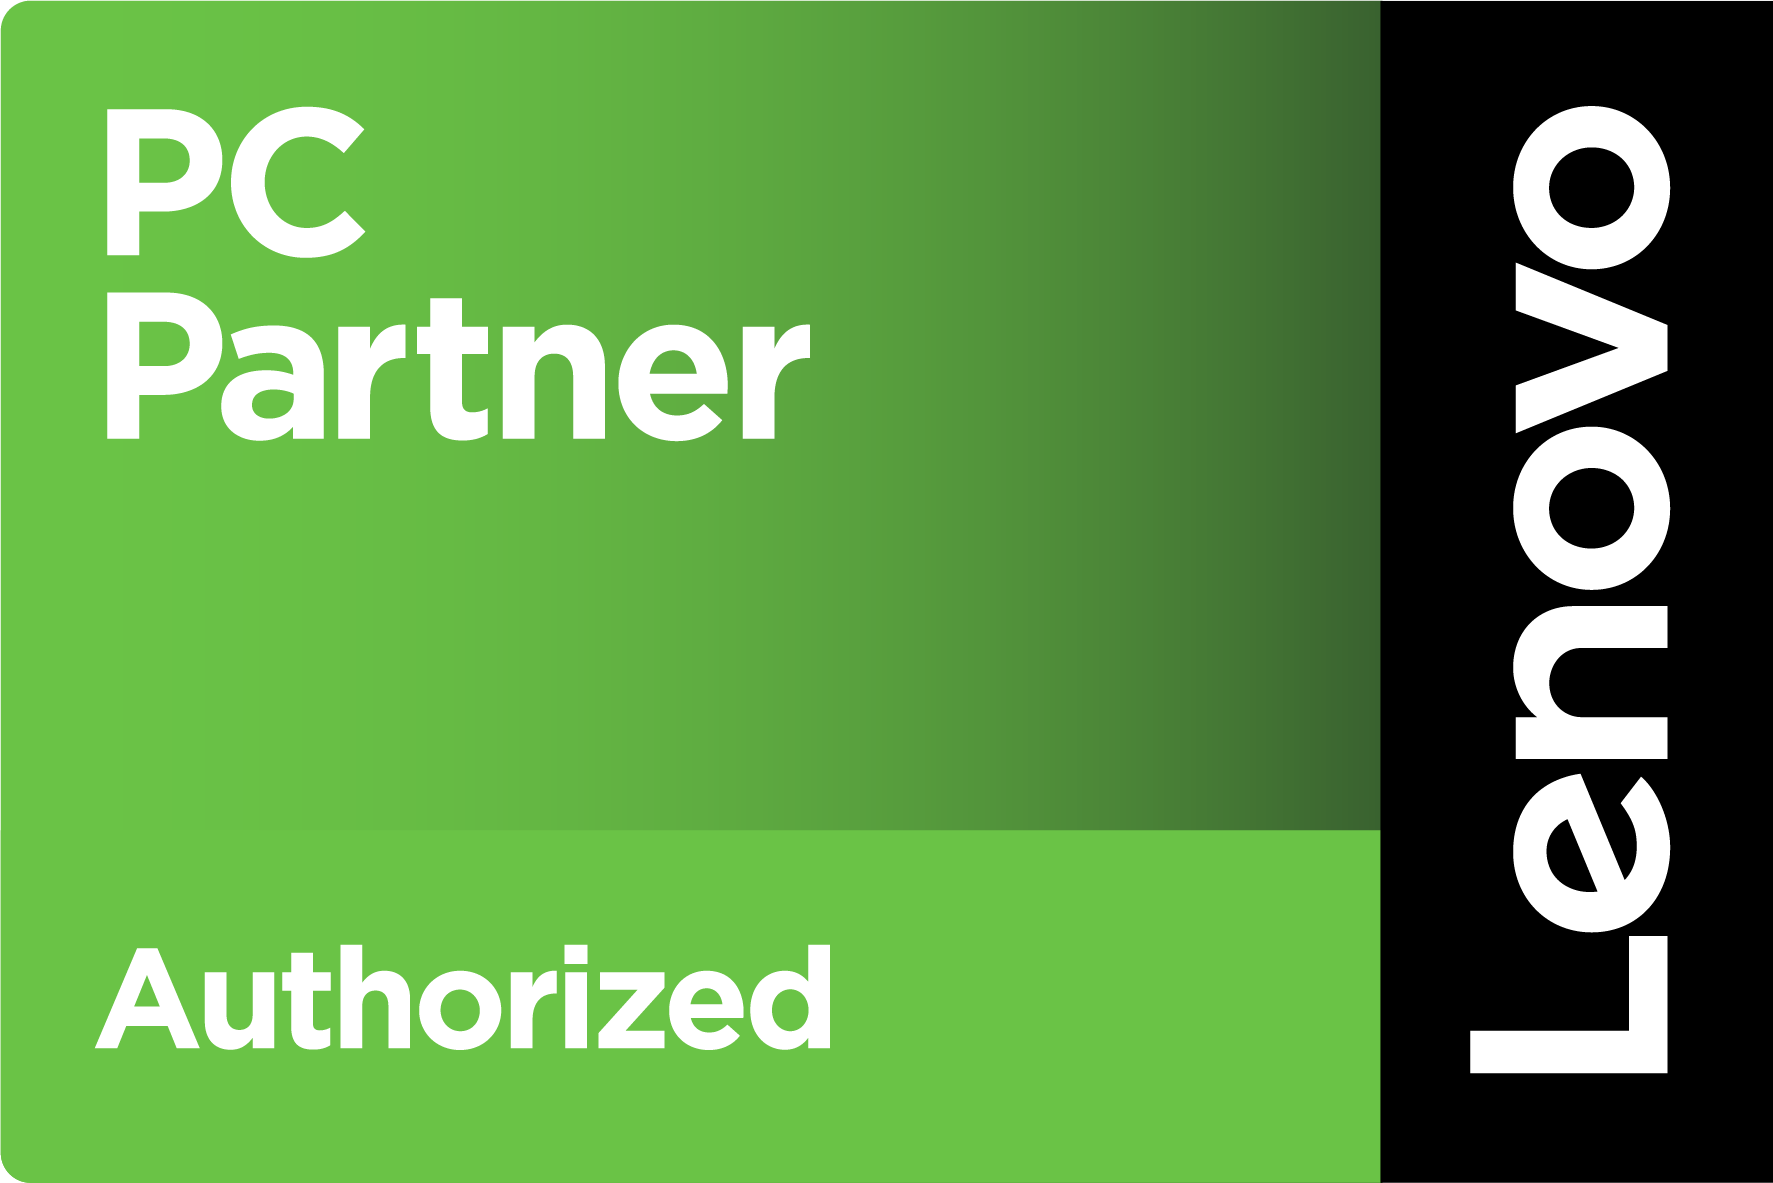 Lenovo Authorized PC Partner Image